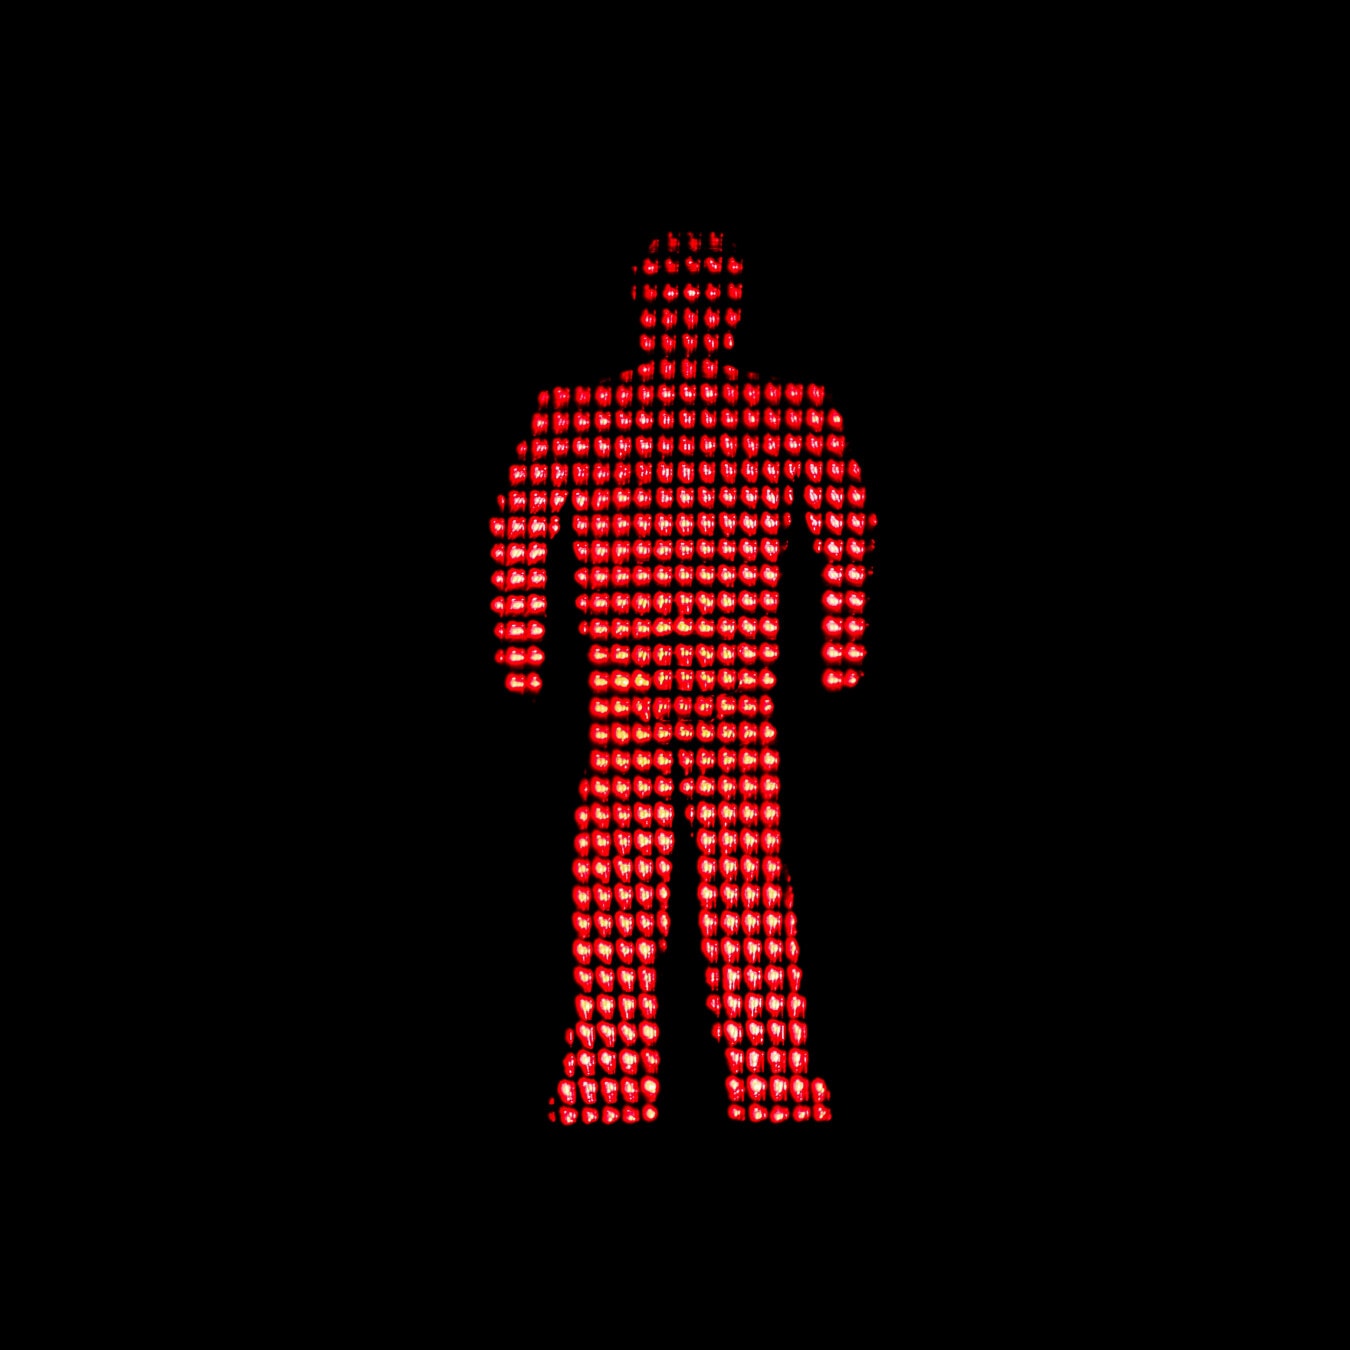 красный свет, семафор, светофор, свет, красный, Управление движением, предупреждение, остановить, символ, трафик